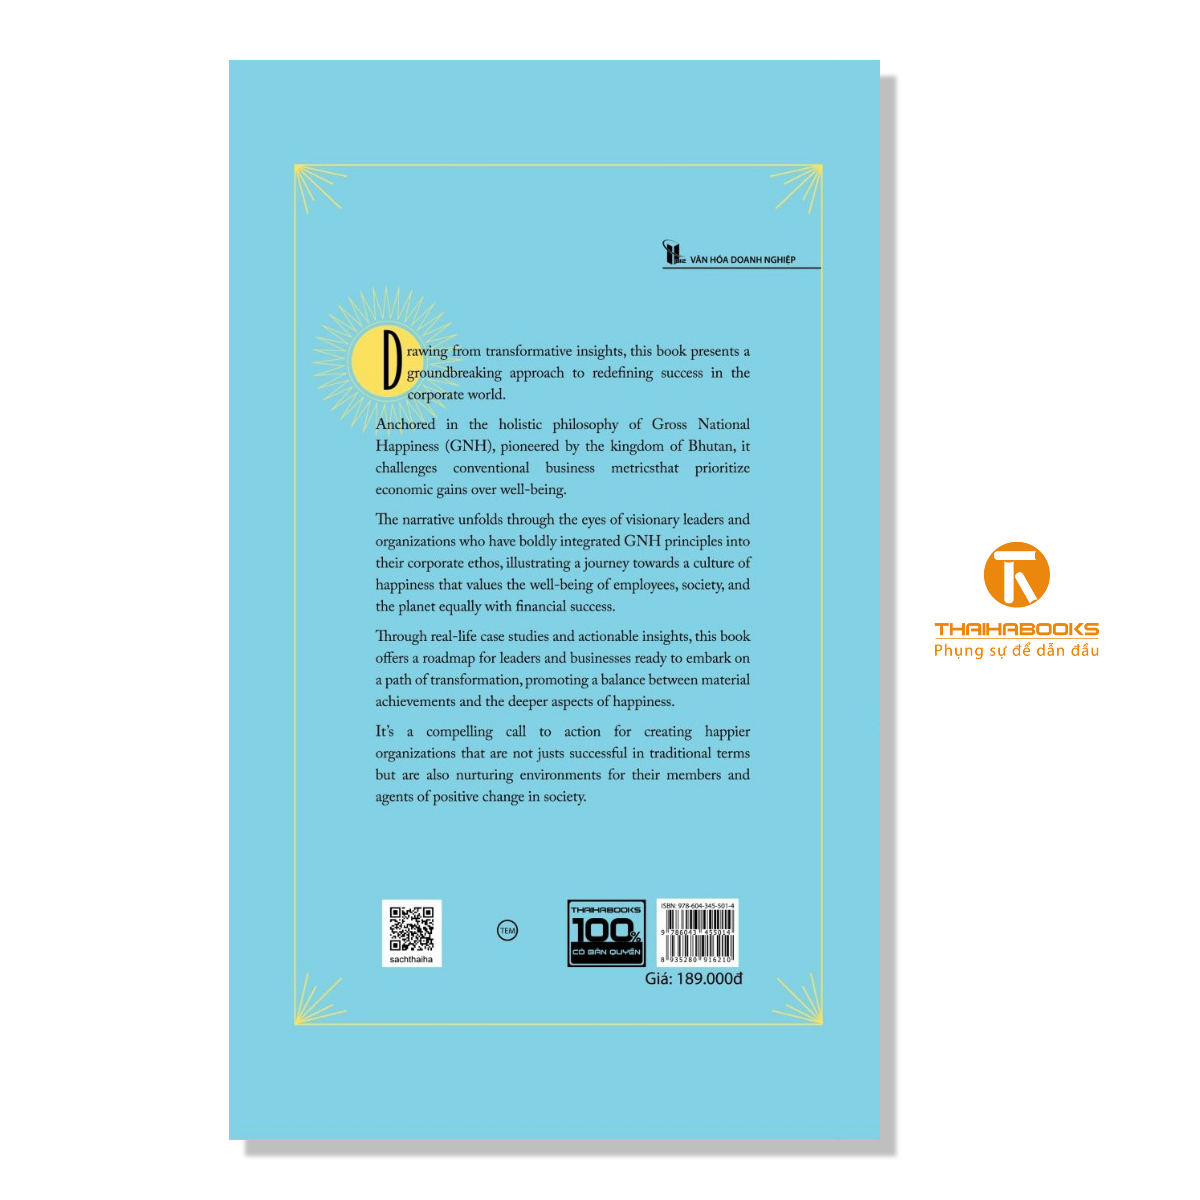 Sách - HAPPY ORGANIZATIONS ( Bản tiếng Anh )- Thái Hà Books